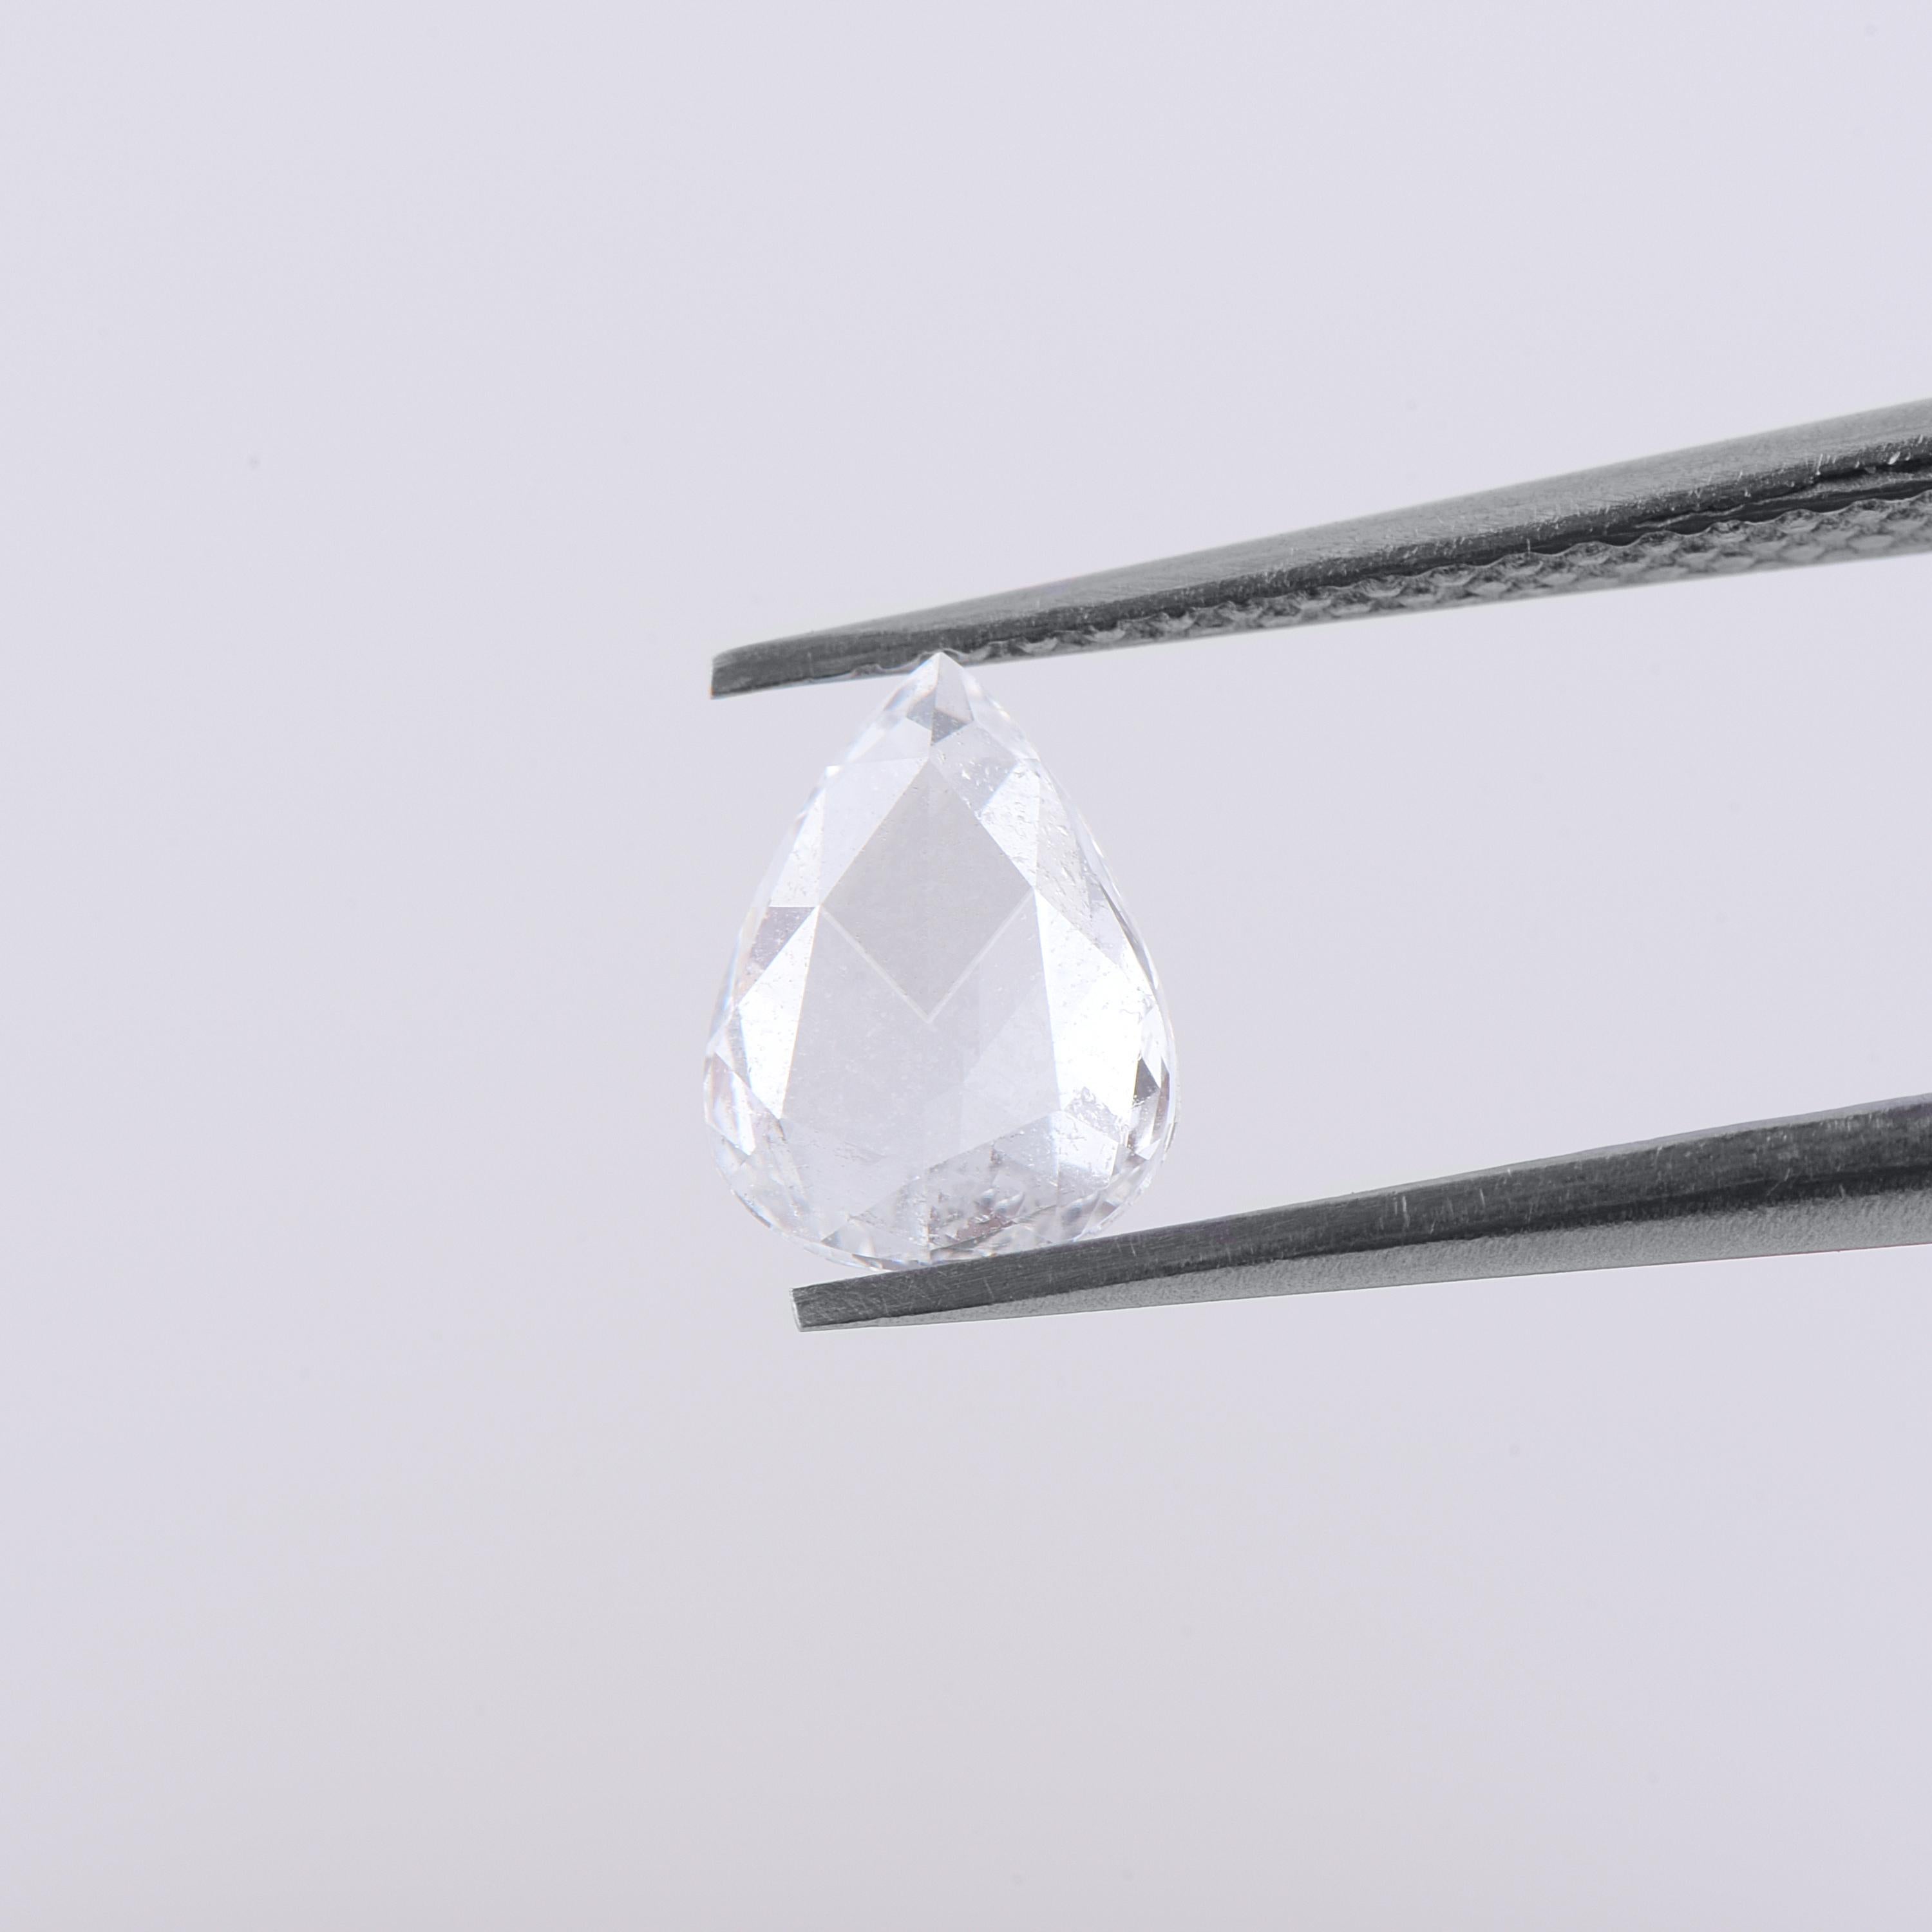 0,63 Karat, Farbe F, Reinheit VS, Diamant im Rosenschliff mit Birne. Der Diamant weist Transparenz und Symmetrie auf. Mit den Maßen 7,2 x 5,5 kann dieser lose Diamant in einen Verlobungsring oder ein anderes Design Ihrer Wahl eingesetzt werden.